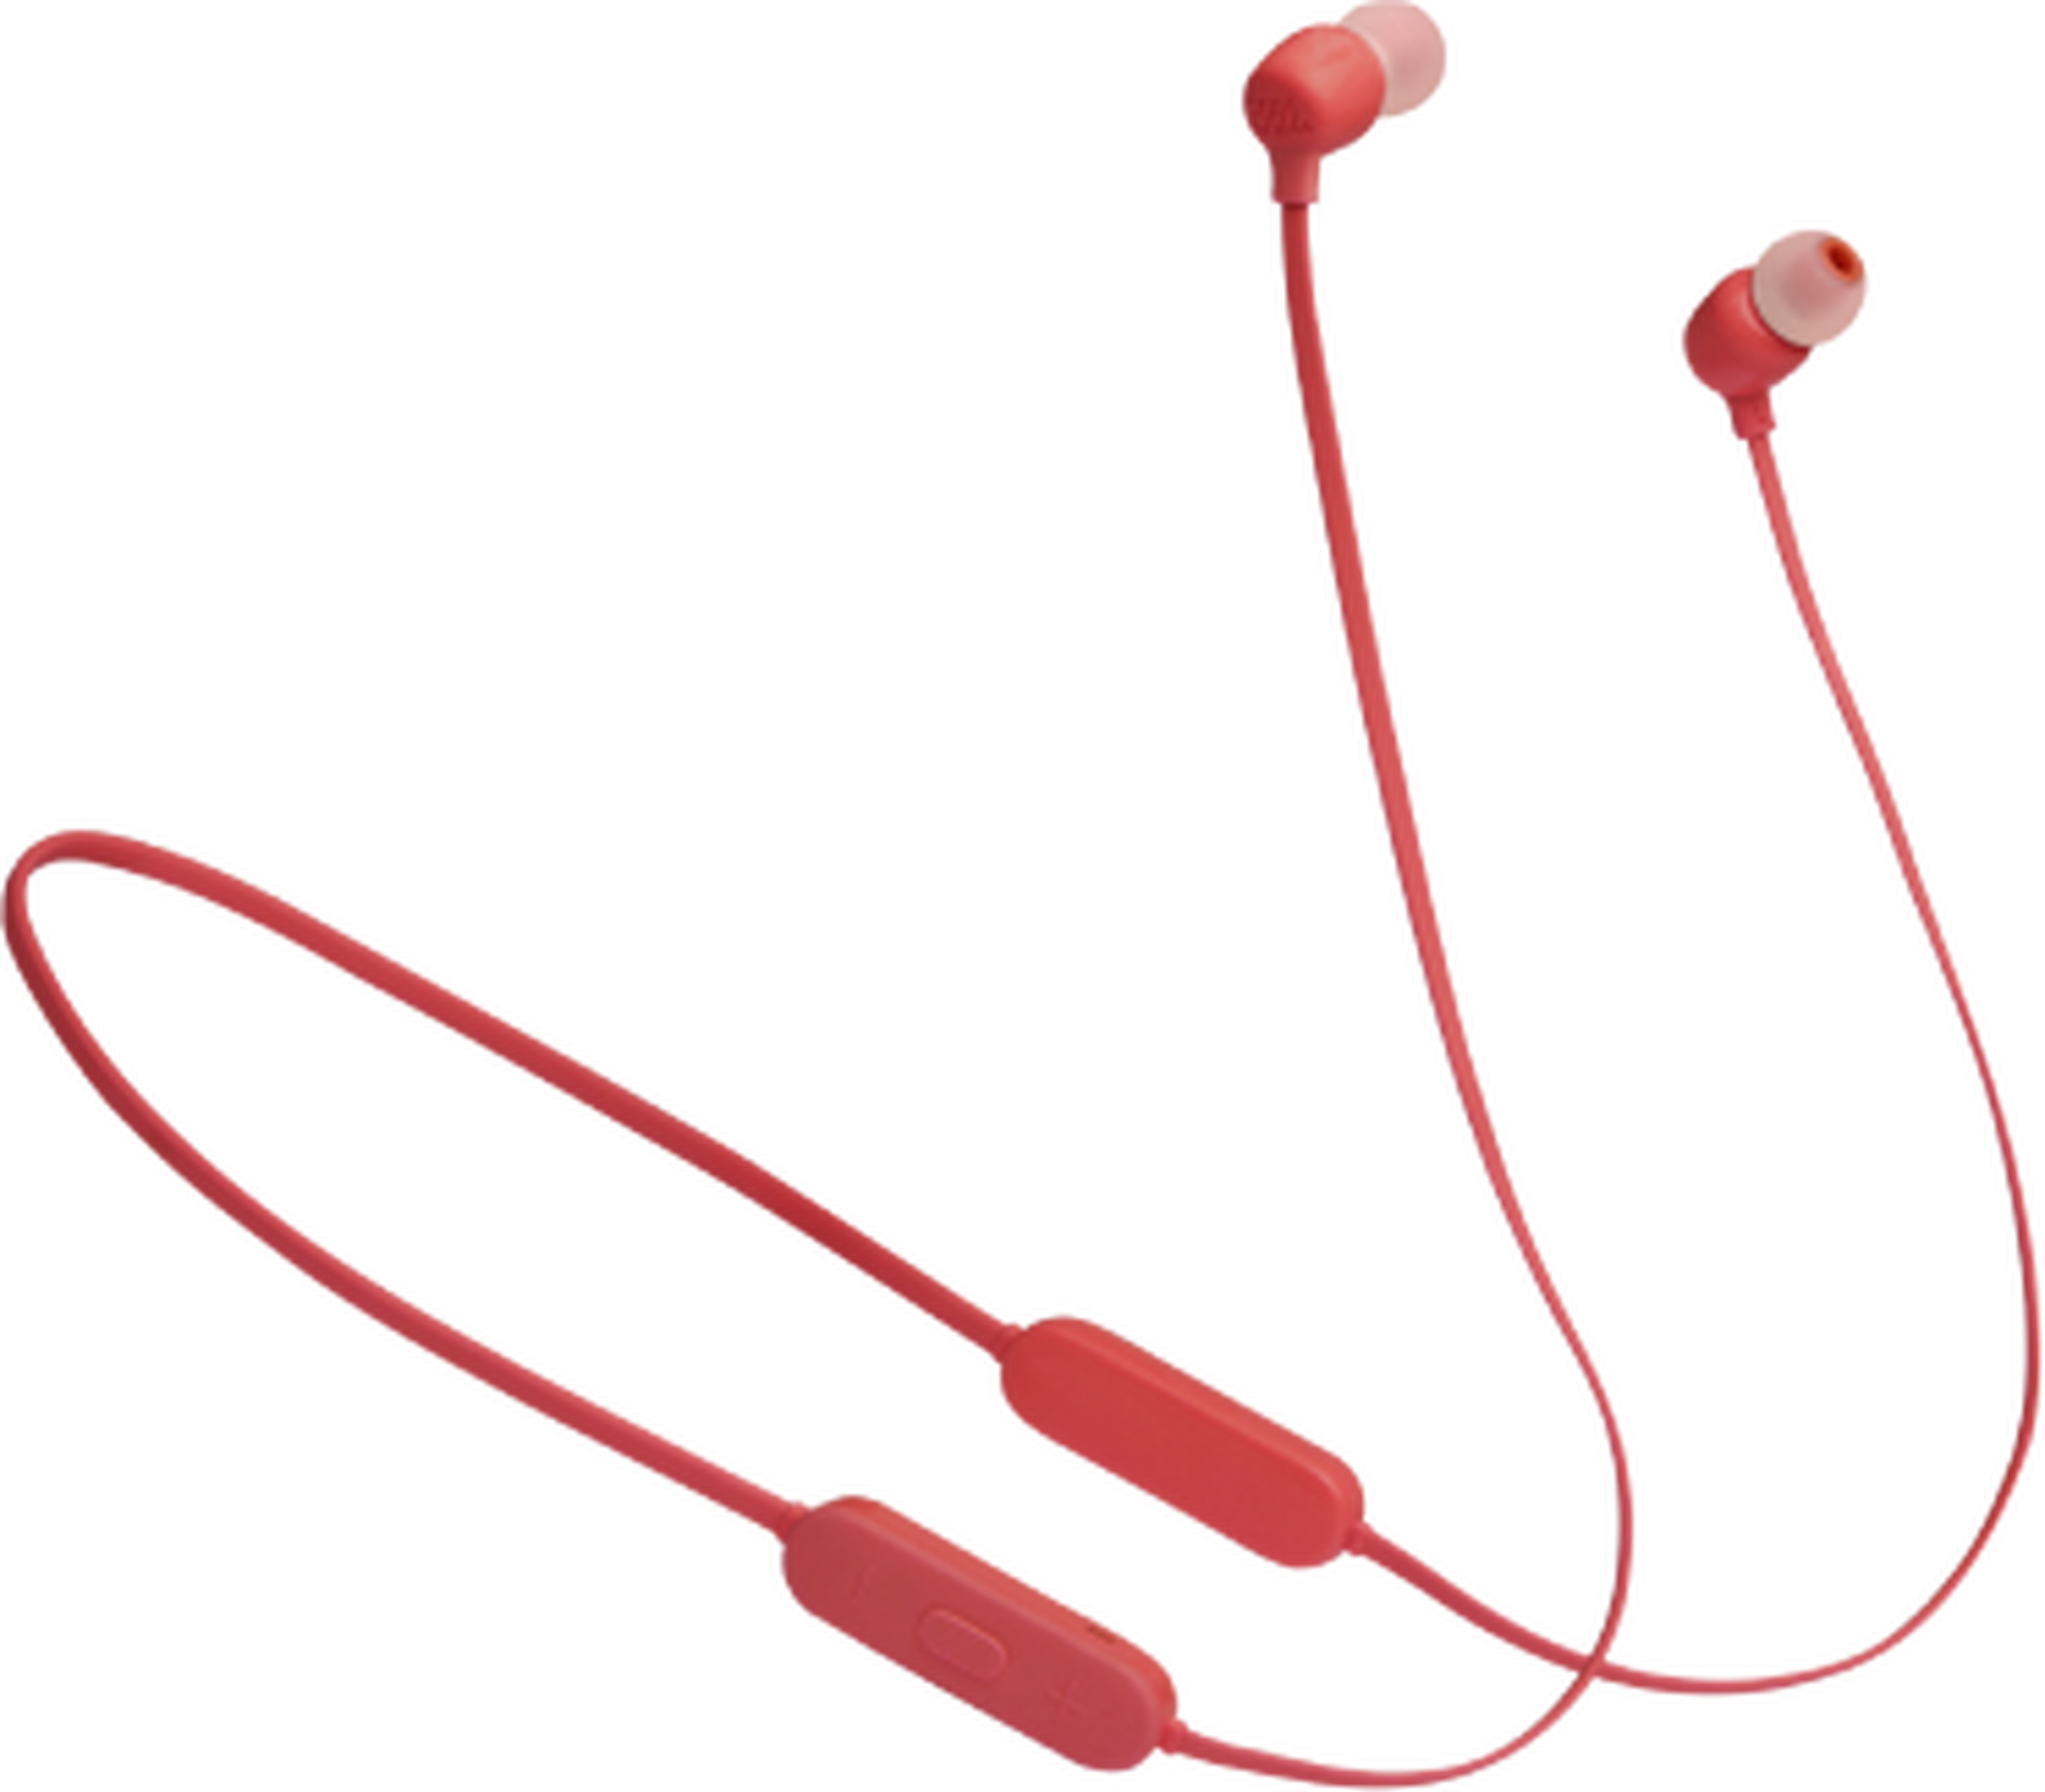 JBL Wireless in-ear headphones (JBL TUNE125BT) - Coral